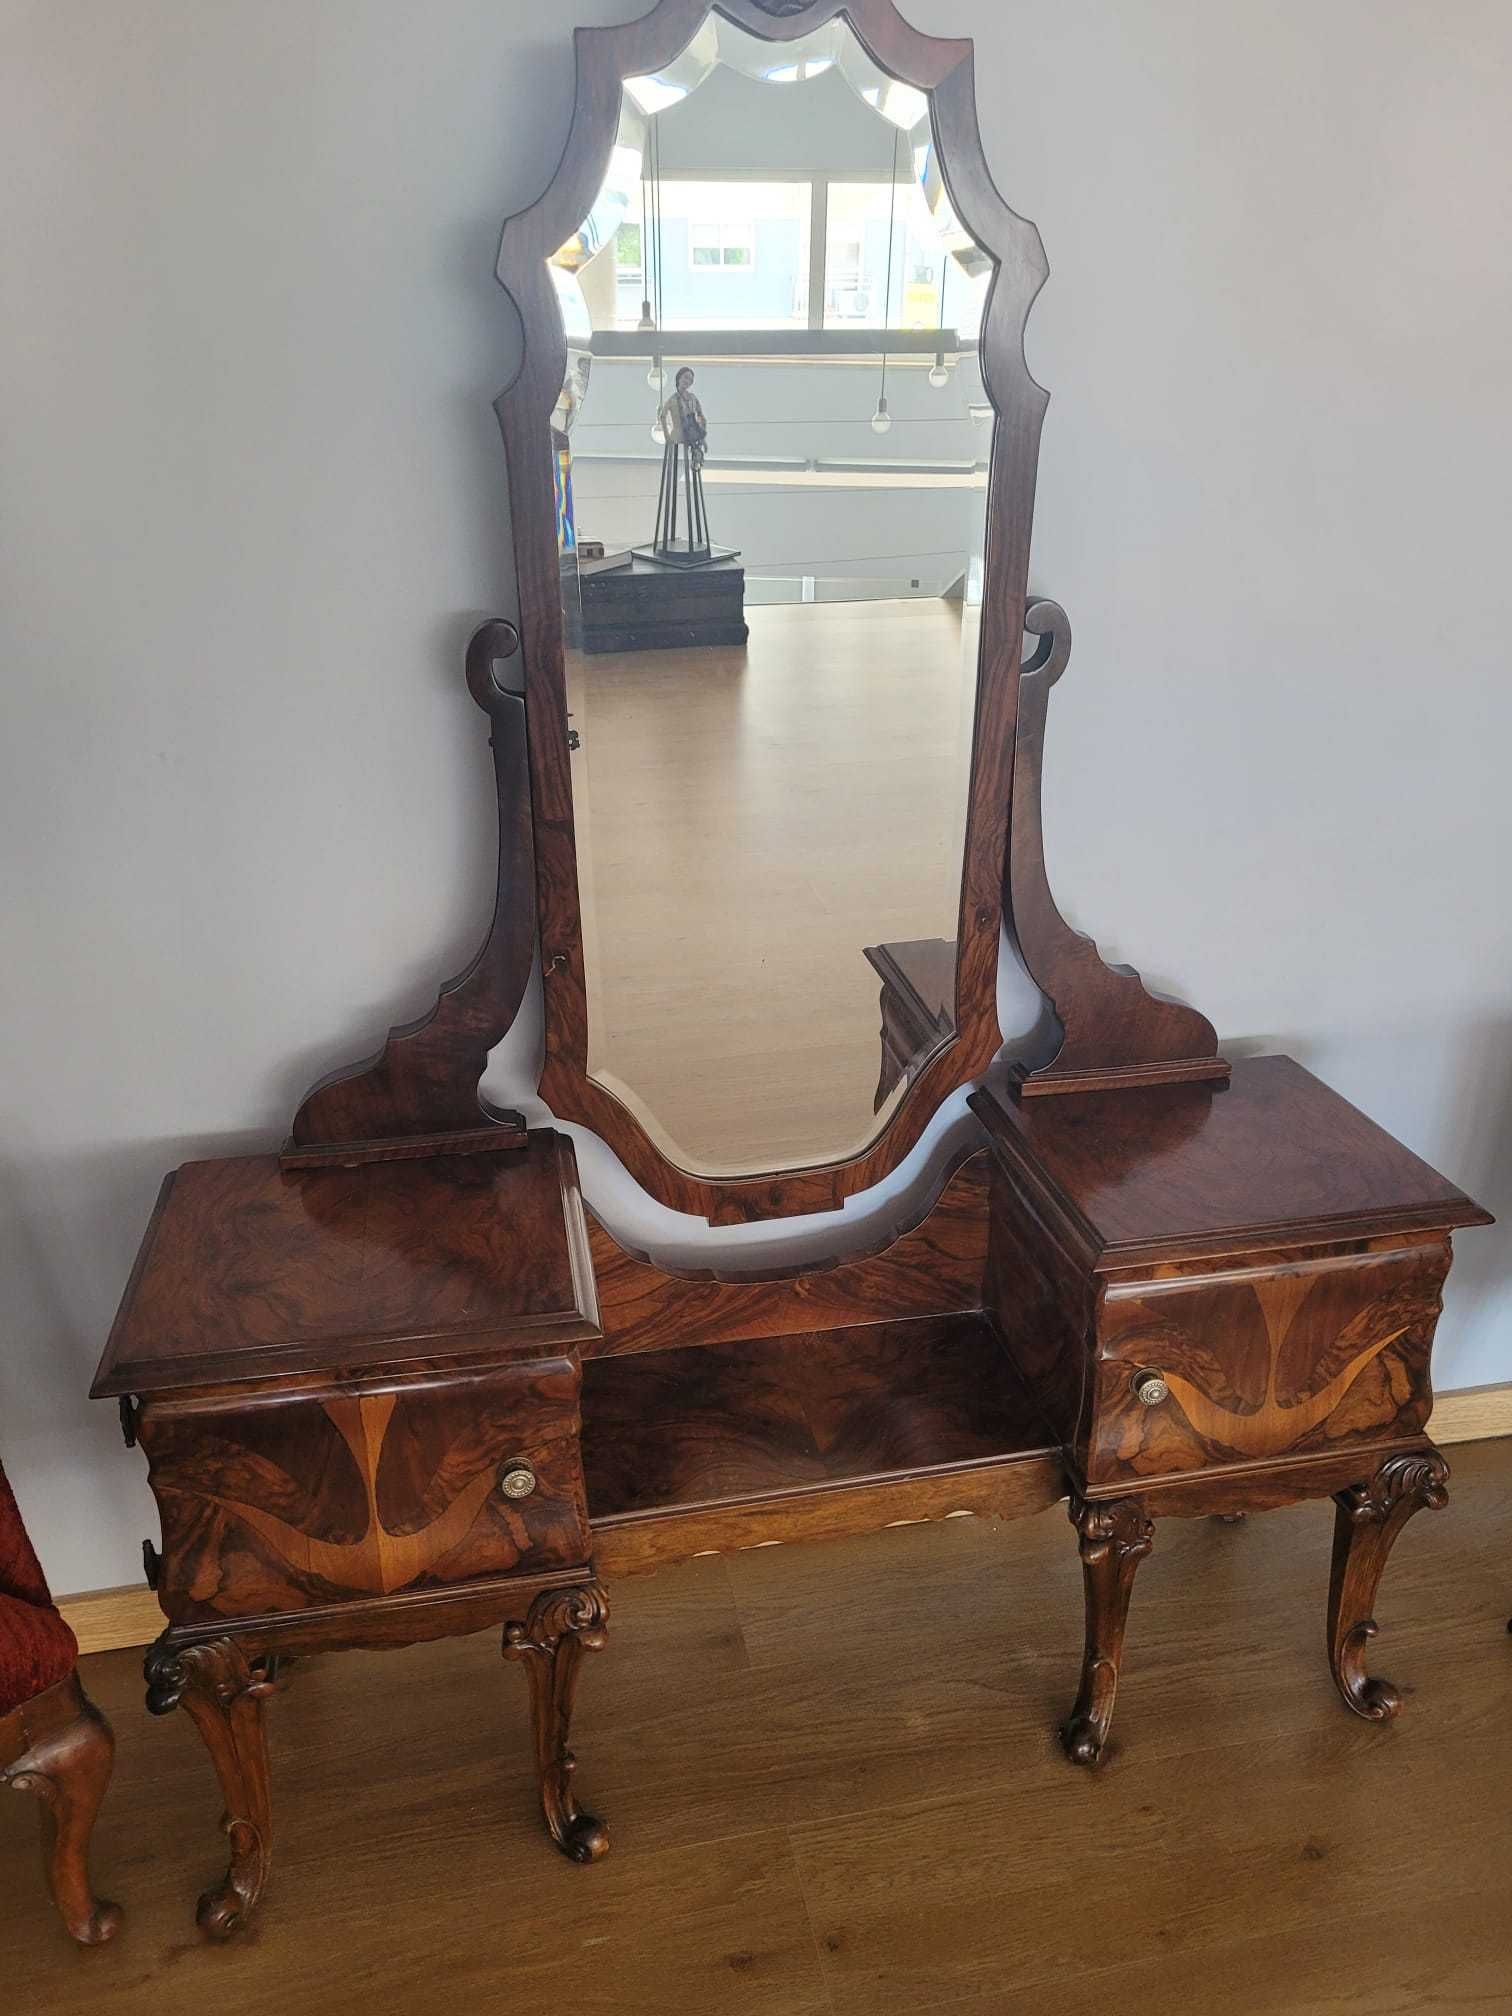 Movel antigo com espelho